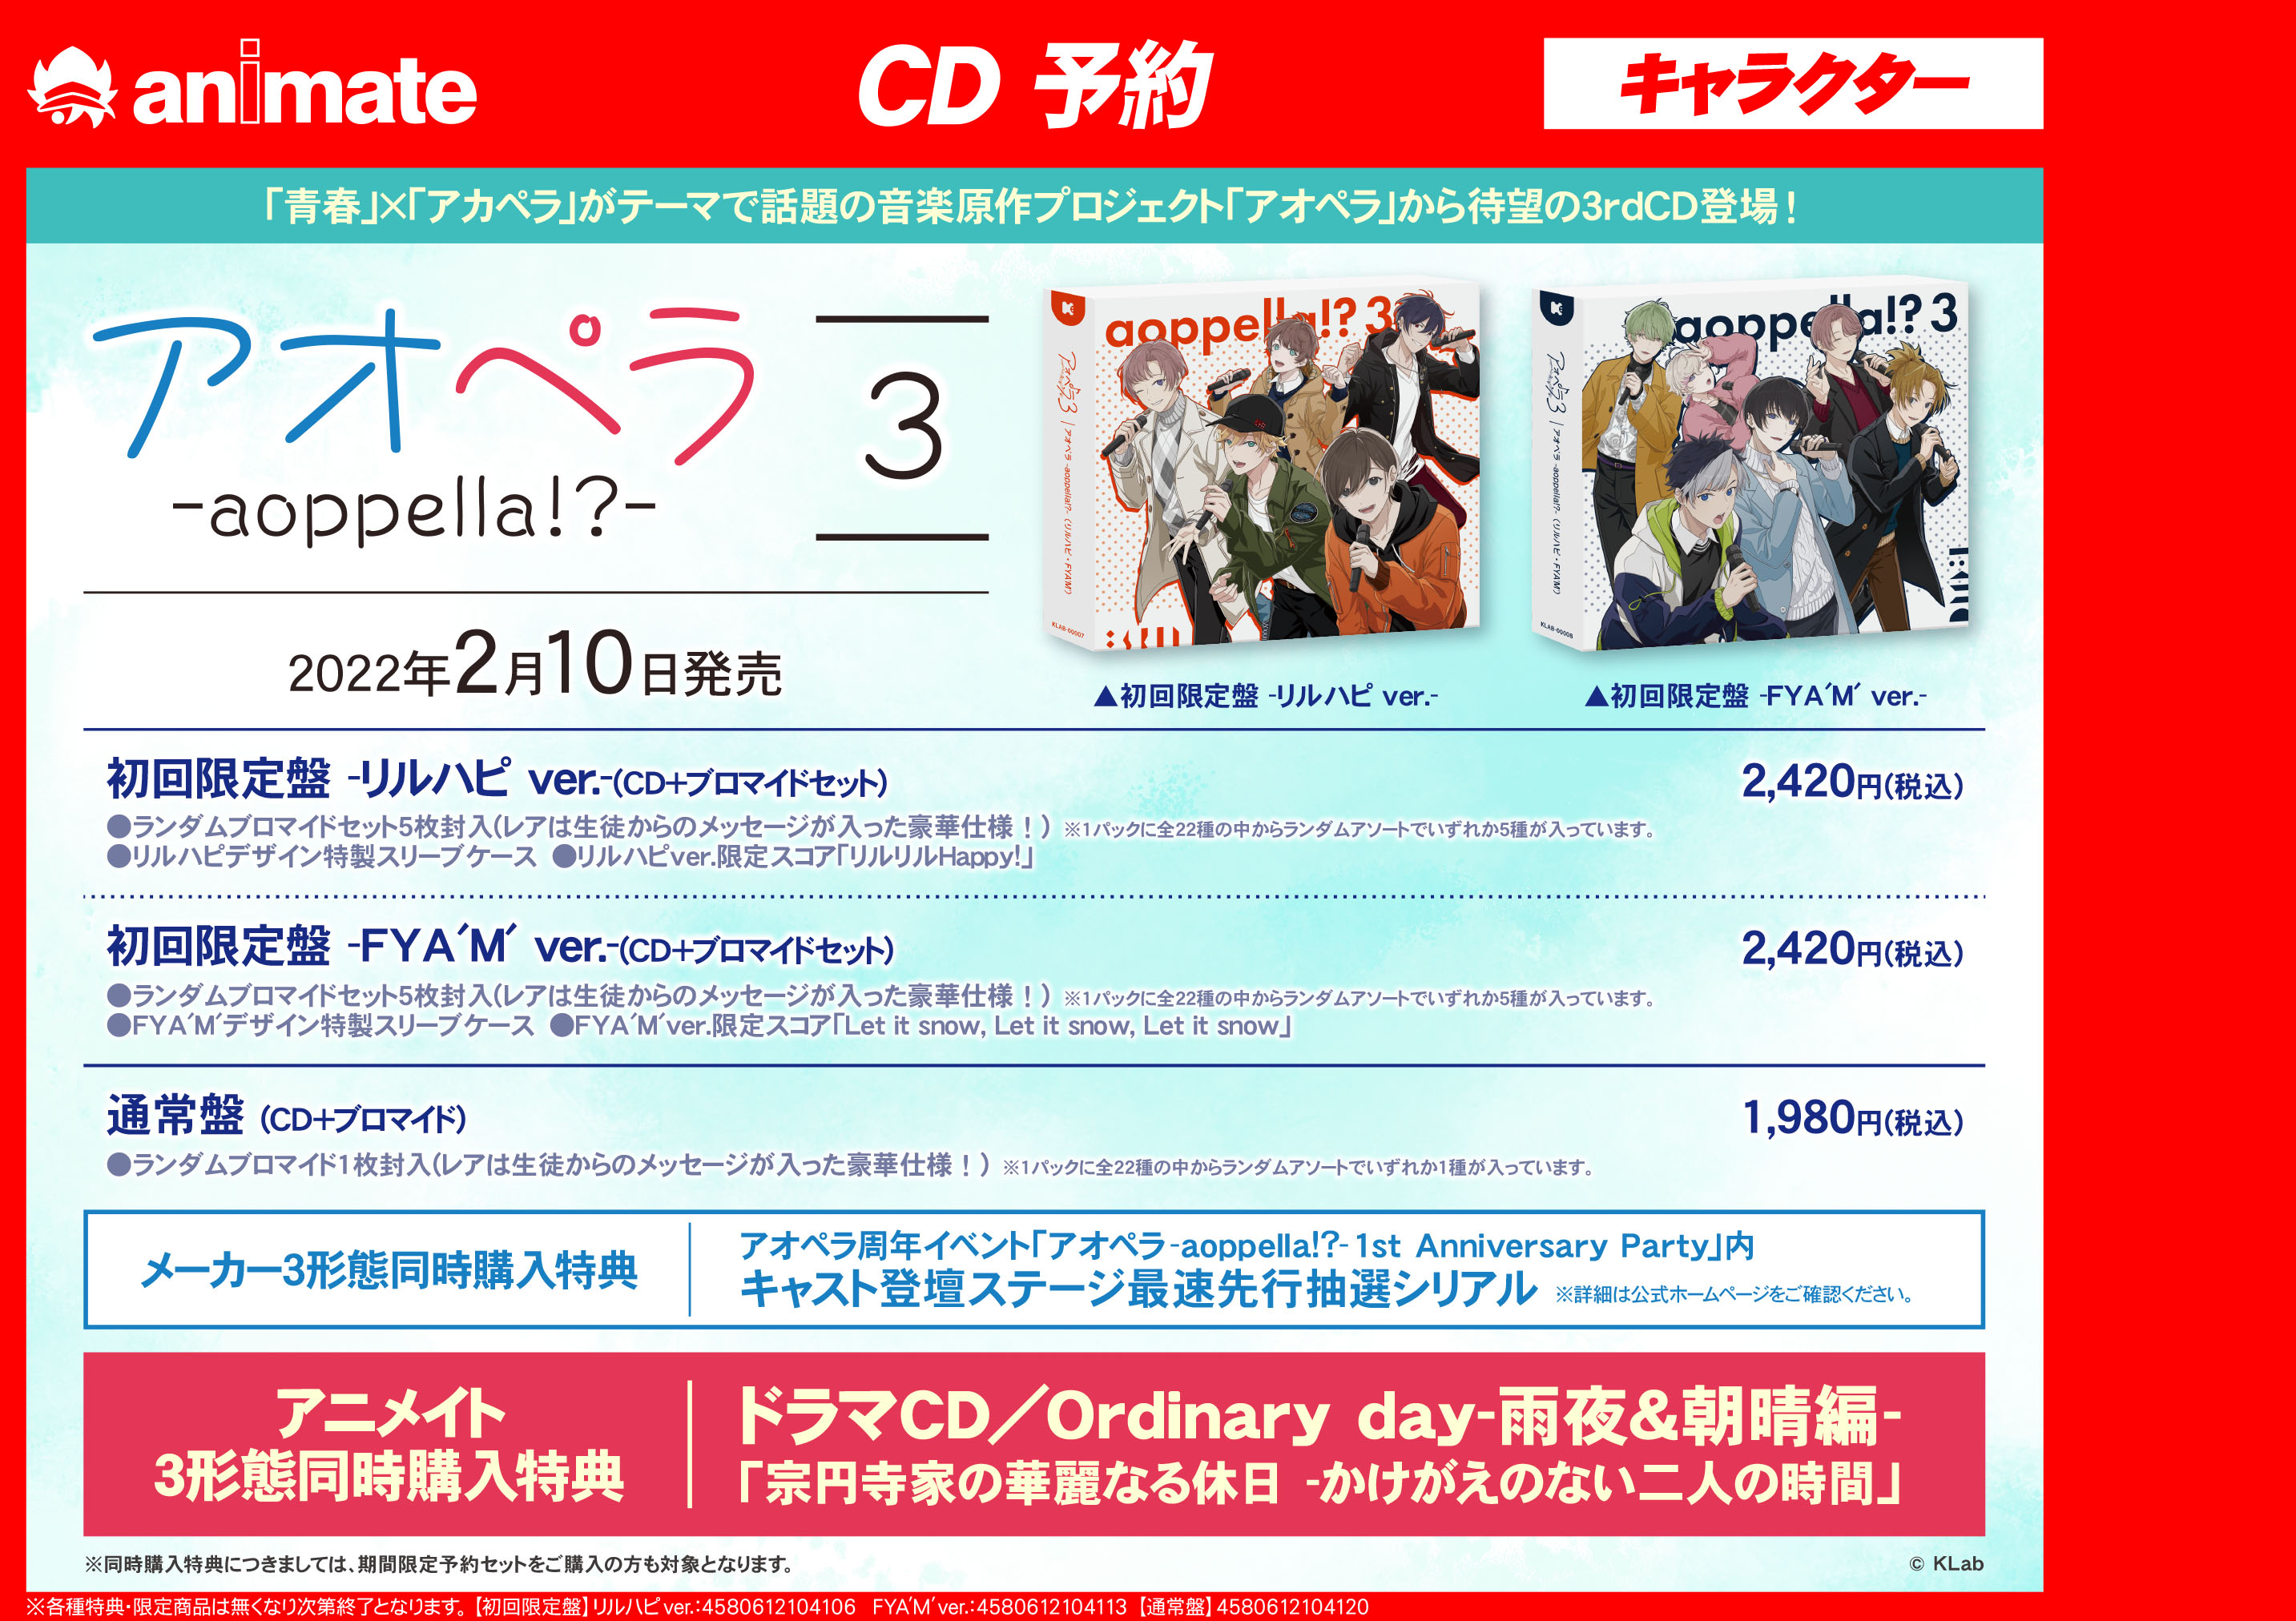 アオペラ シリーズ第3弾cd予約受付中 アニメイト富山